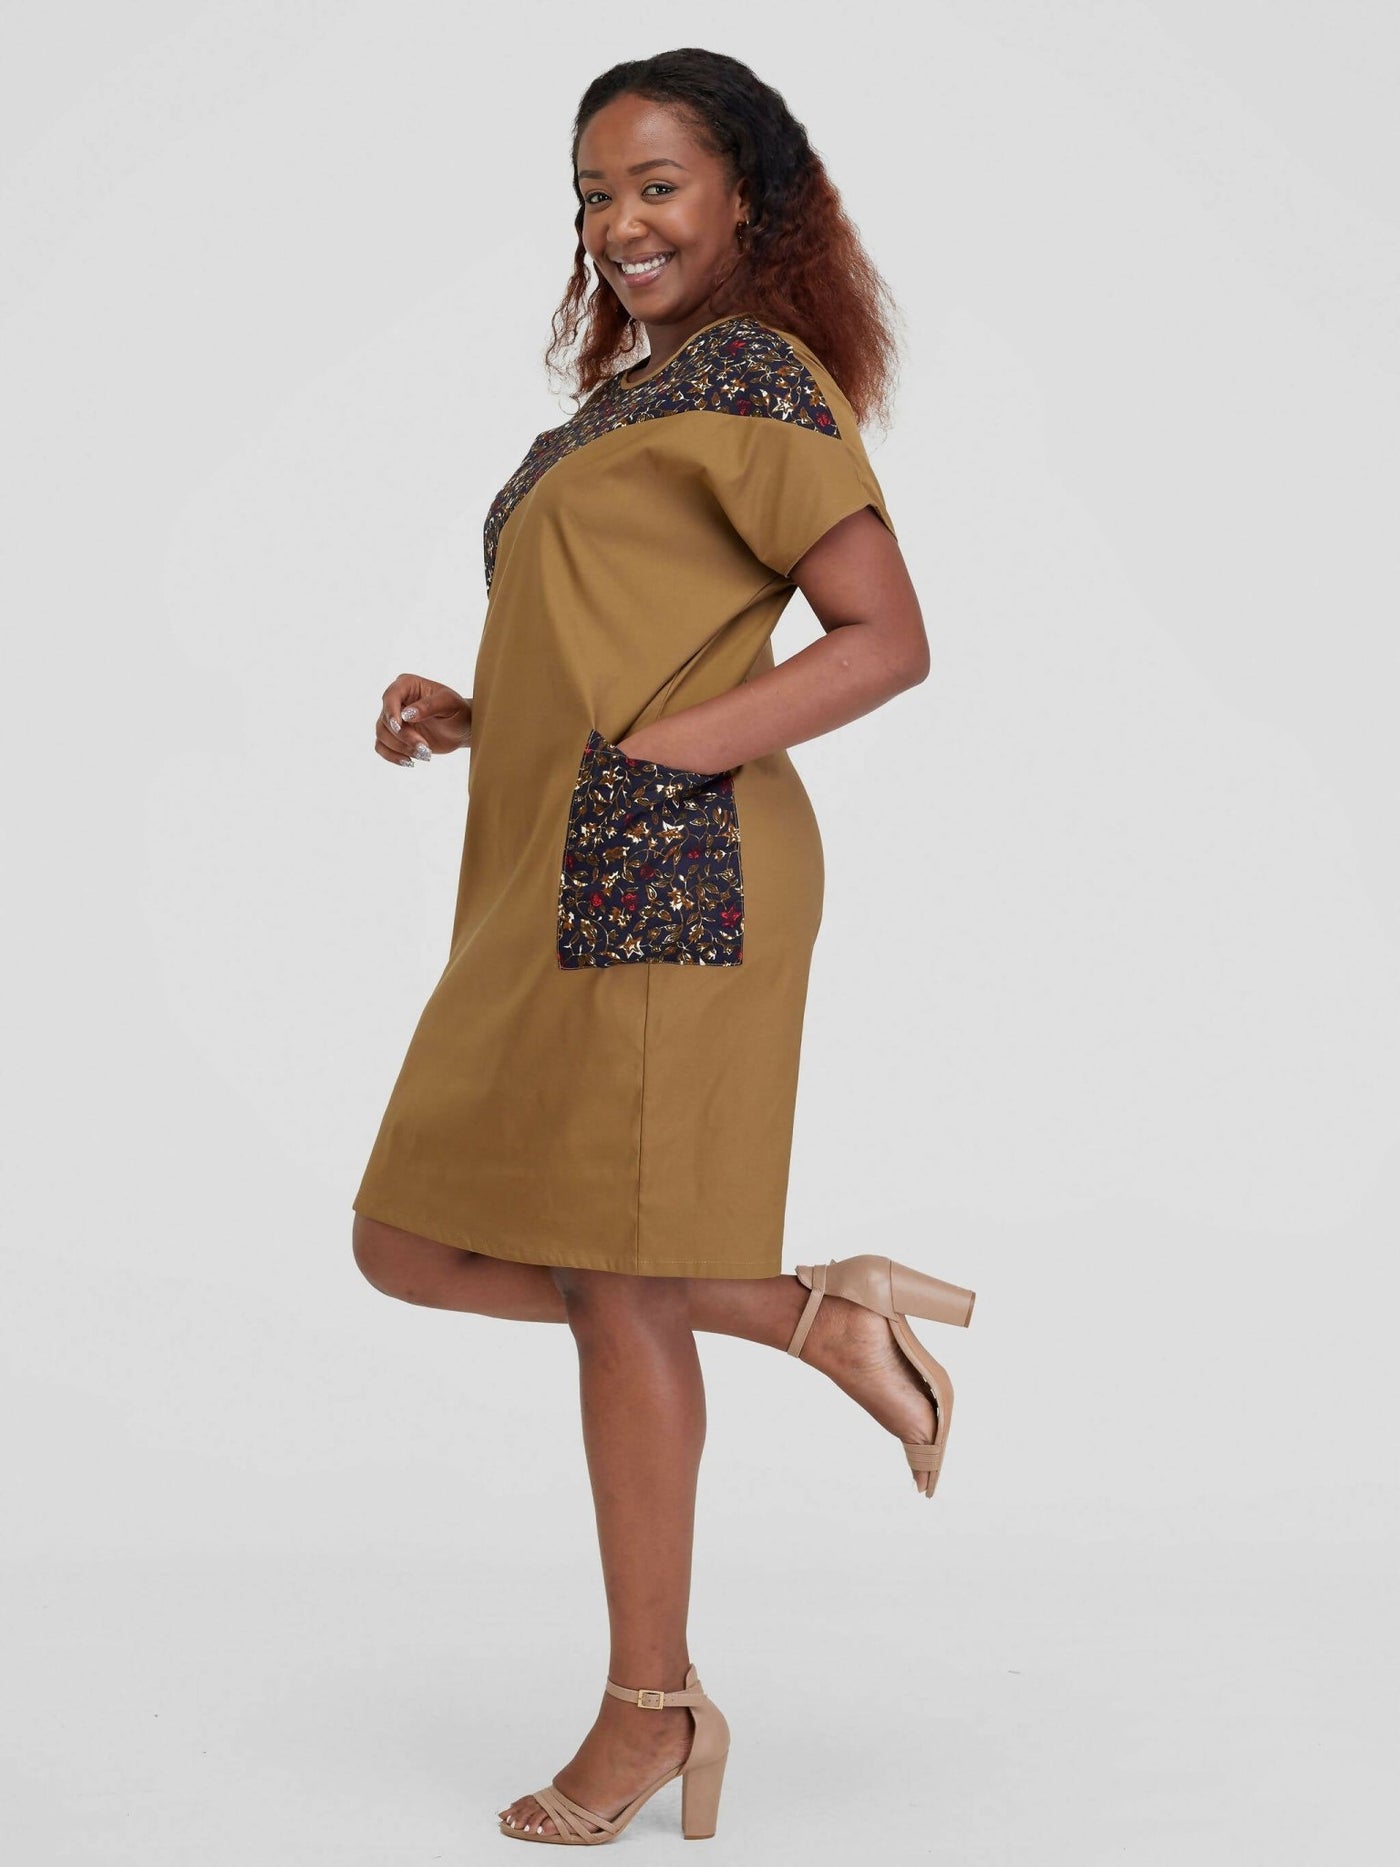 Beqss Zula Dolman Asymmetrical Shift Dress - Khaki - Shopzetu